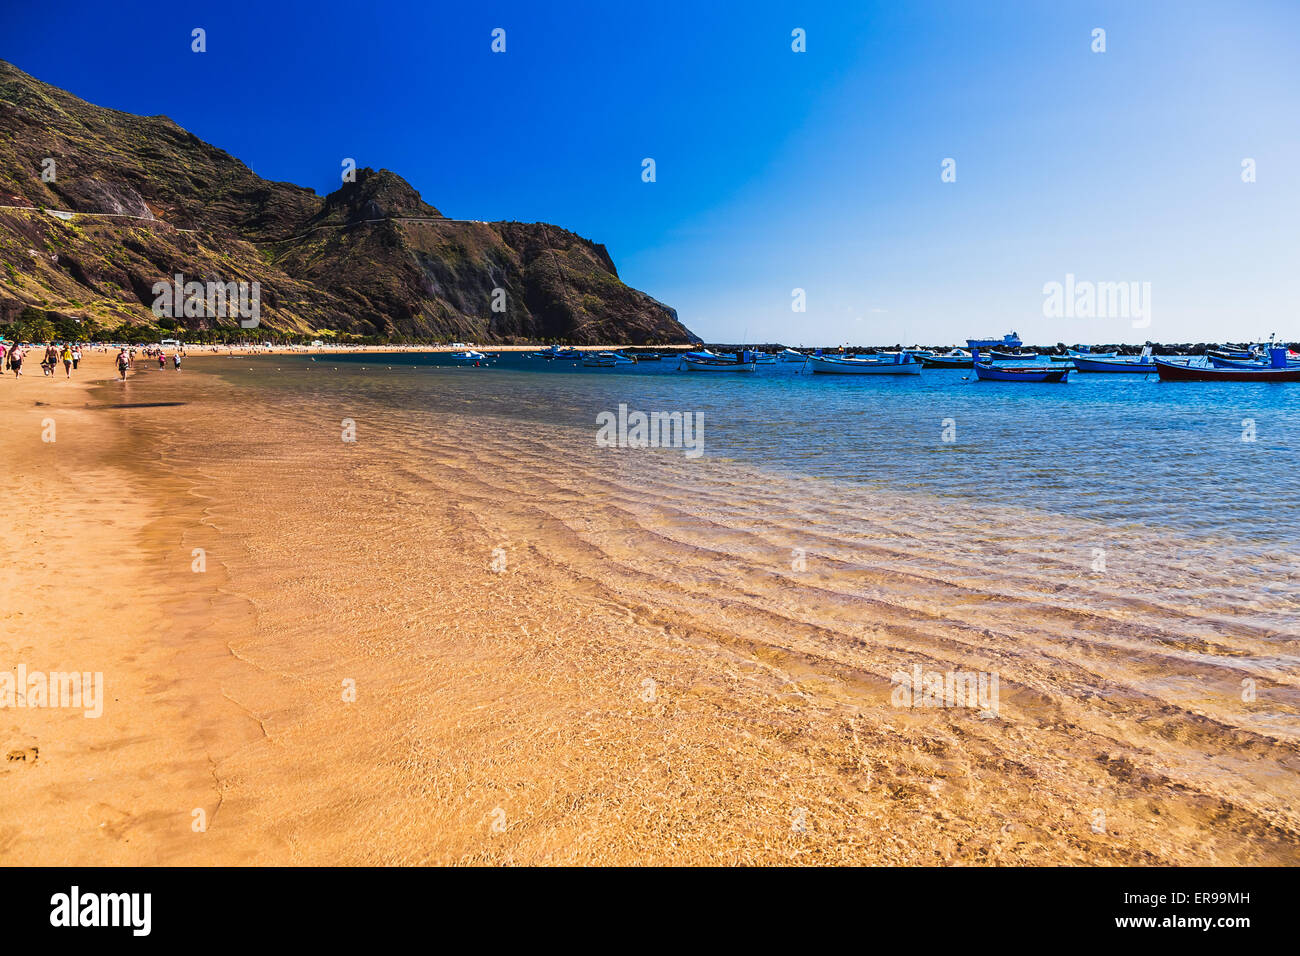 La plage Las Teresitas avec de l'eau et des vagues sur le sable jaune sur l'autre rive de l'océan Atlantique ou sur l'île de Ténérife, Espagne Banque D'Images